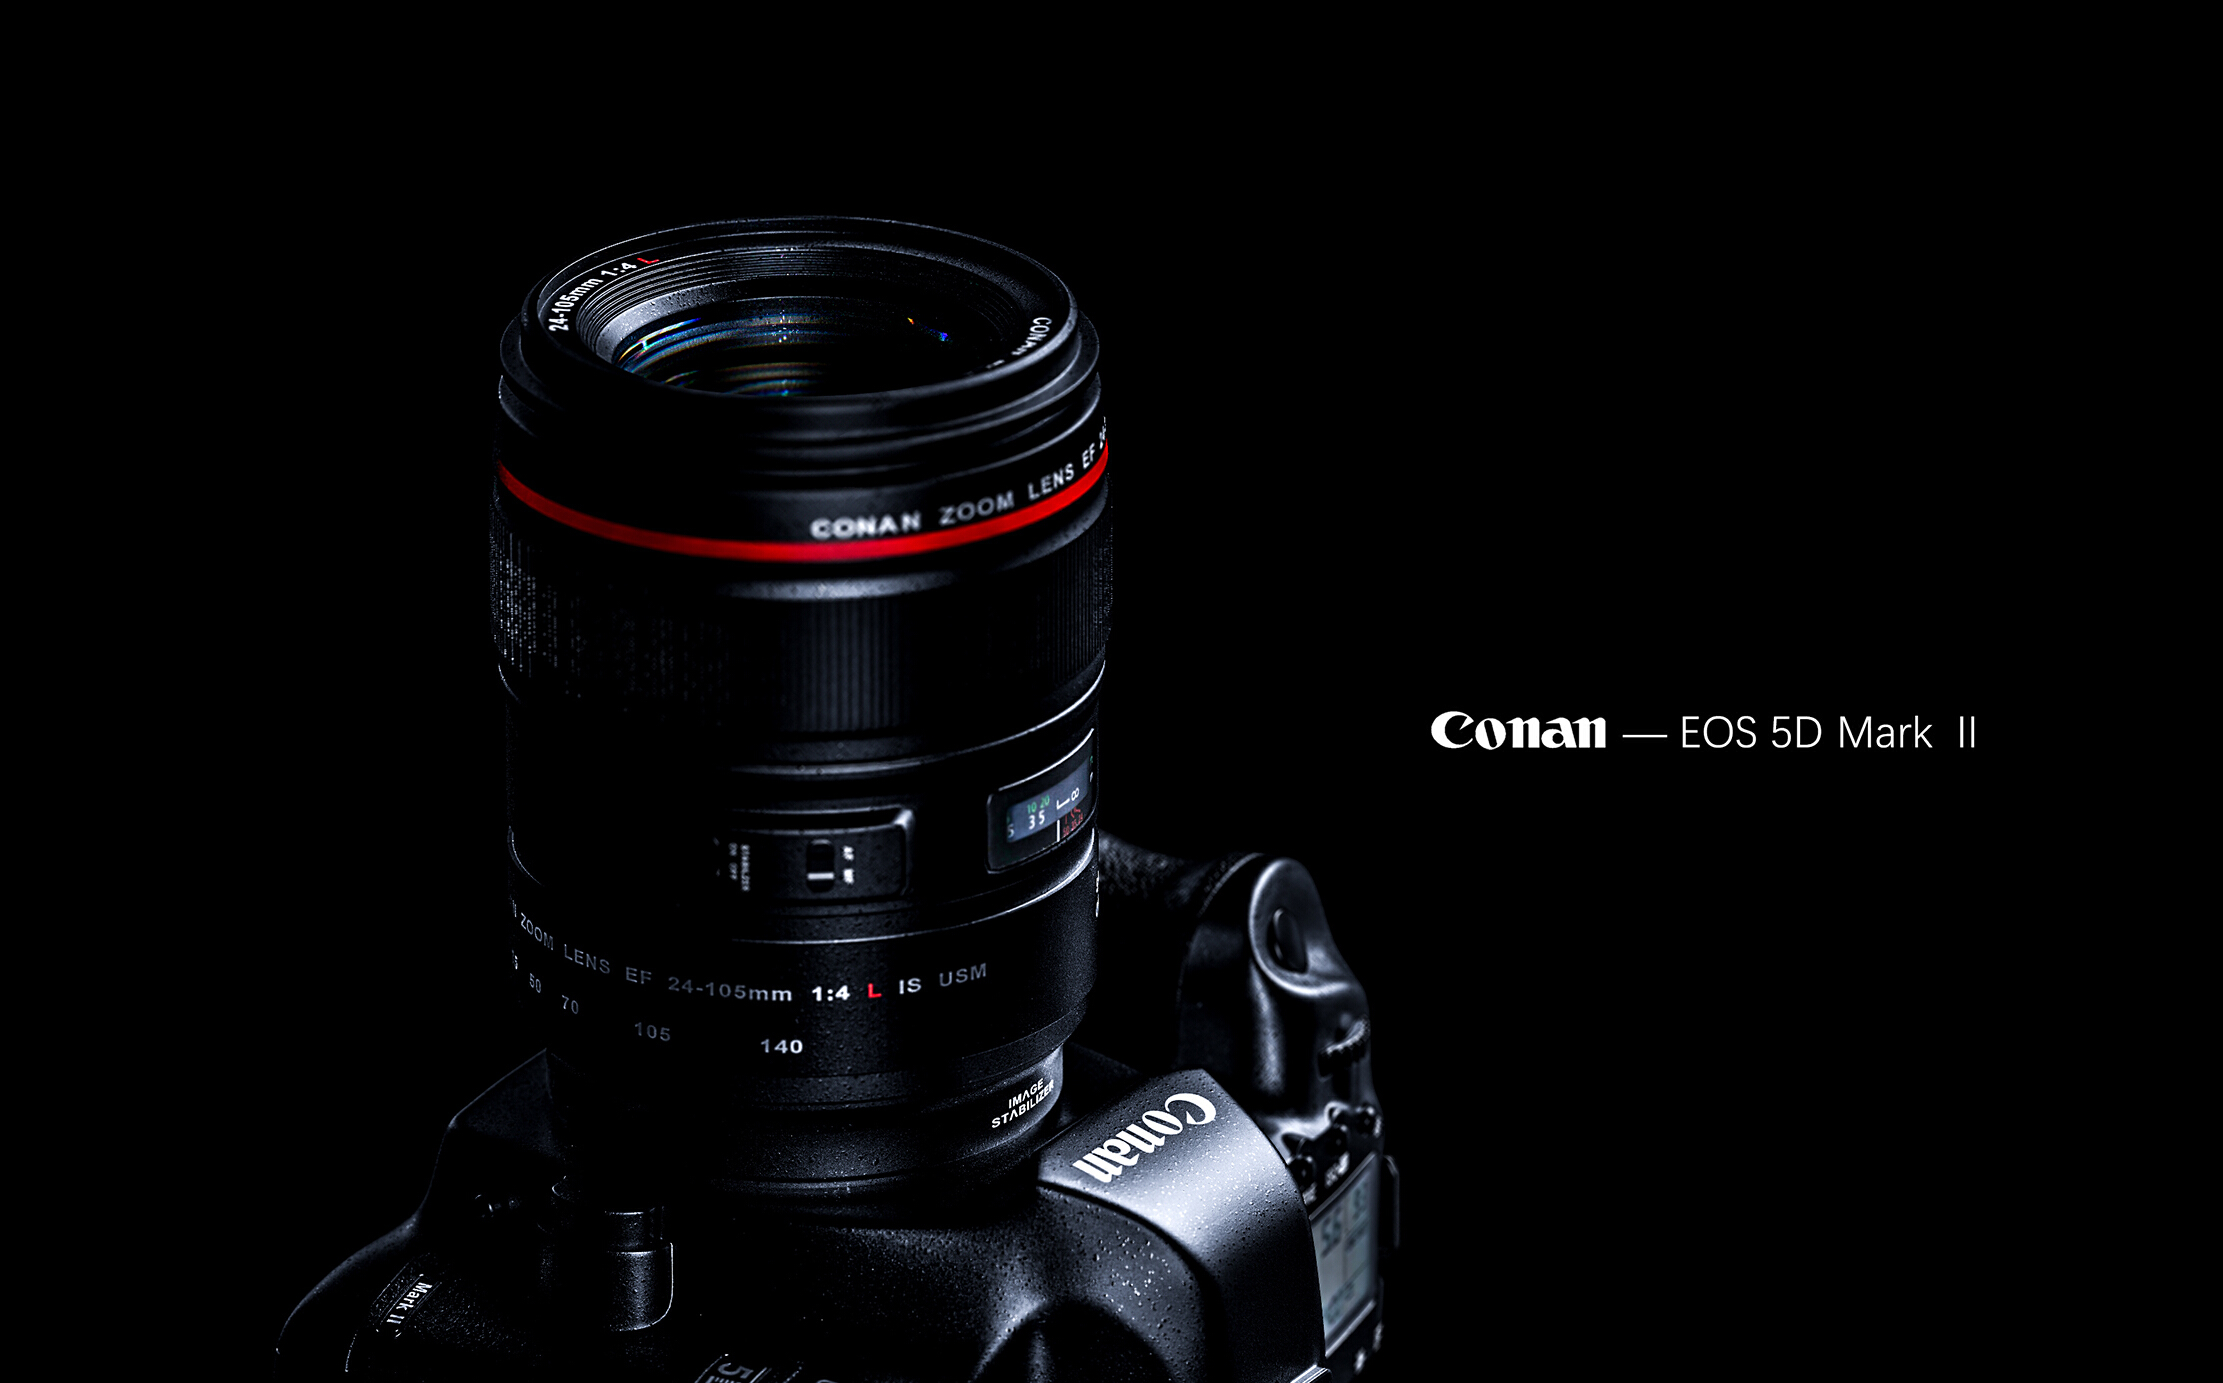 Canon SLR camera